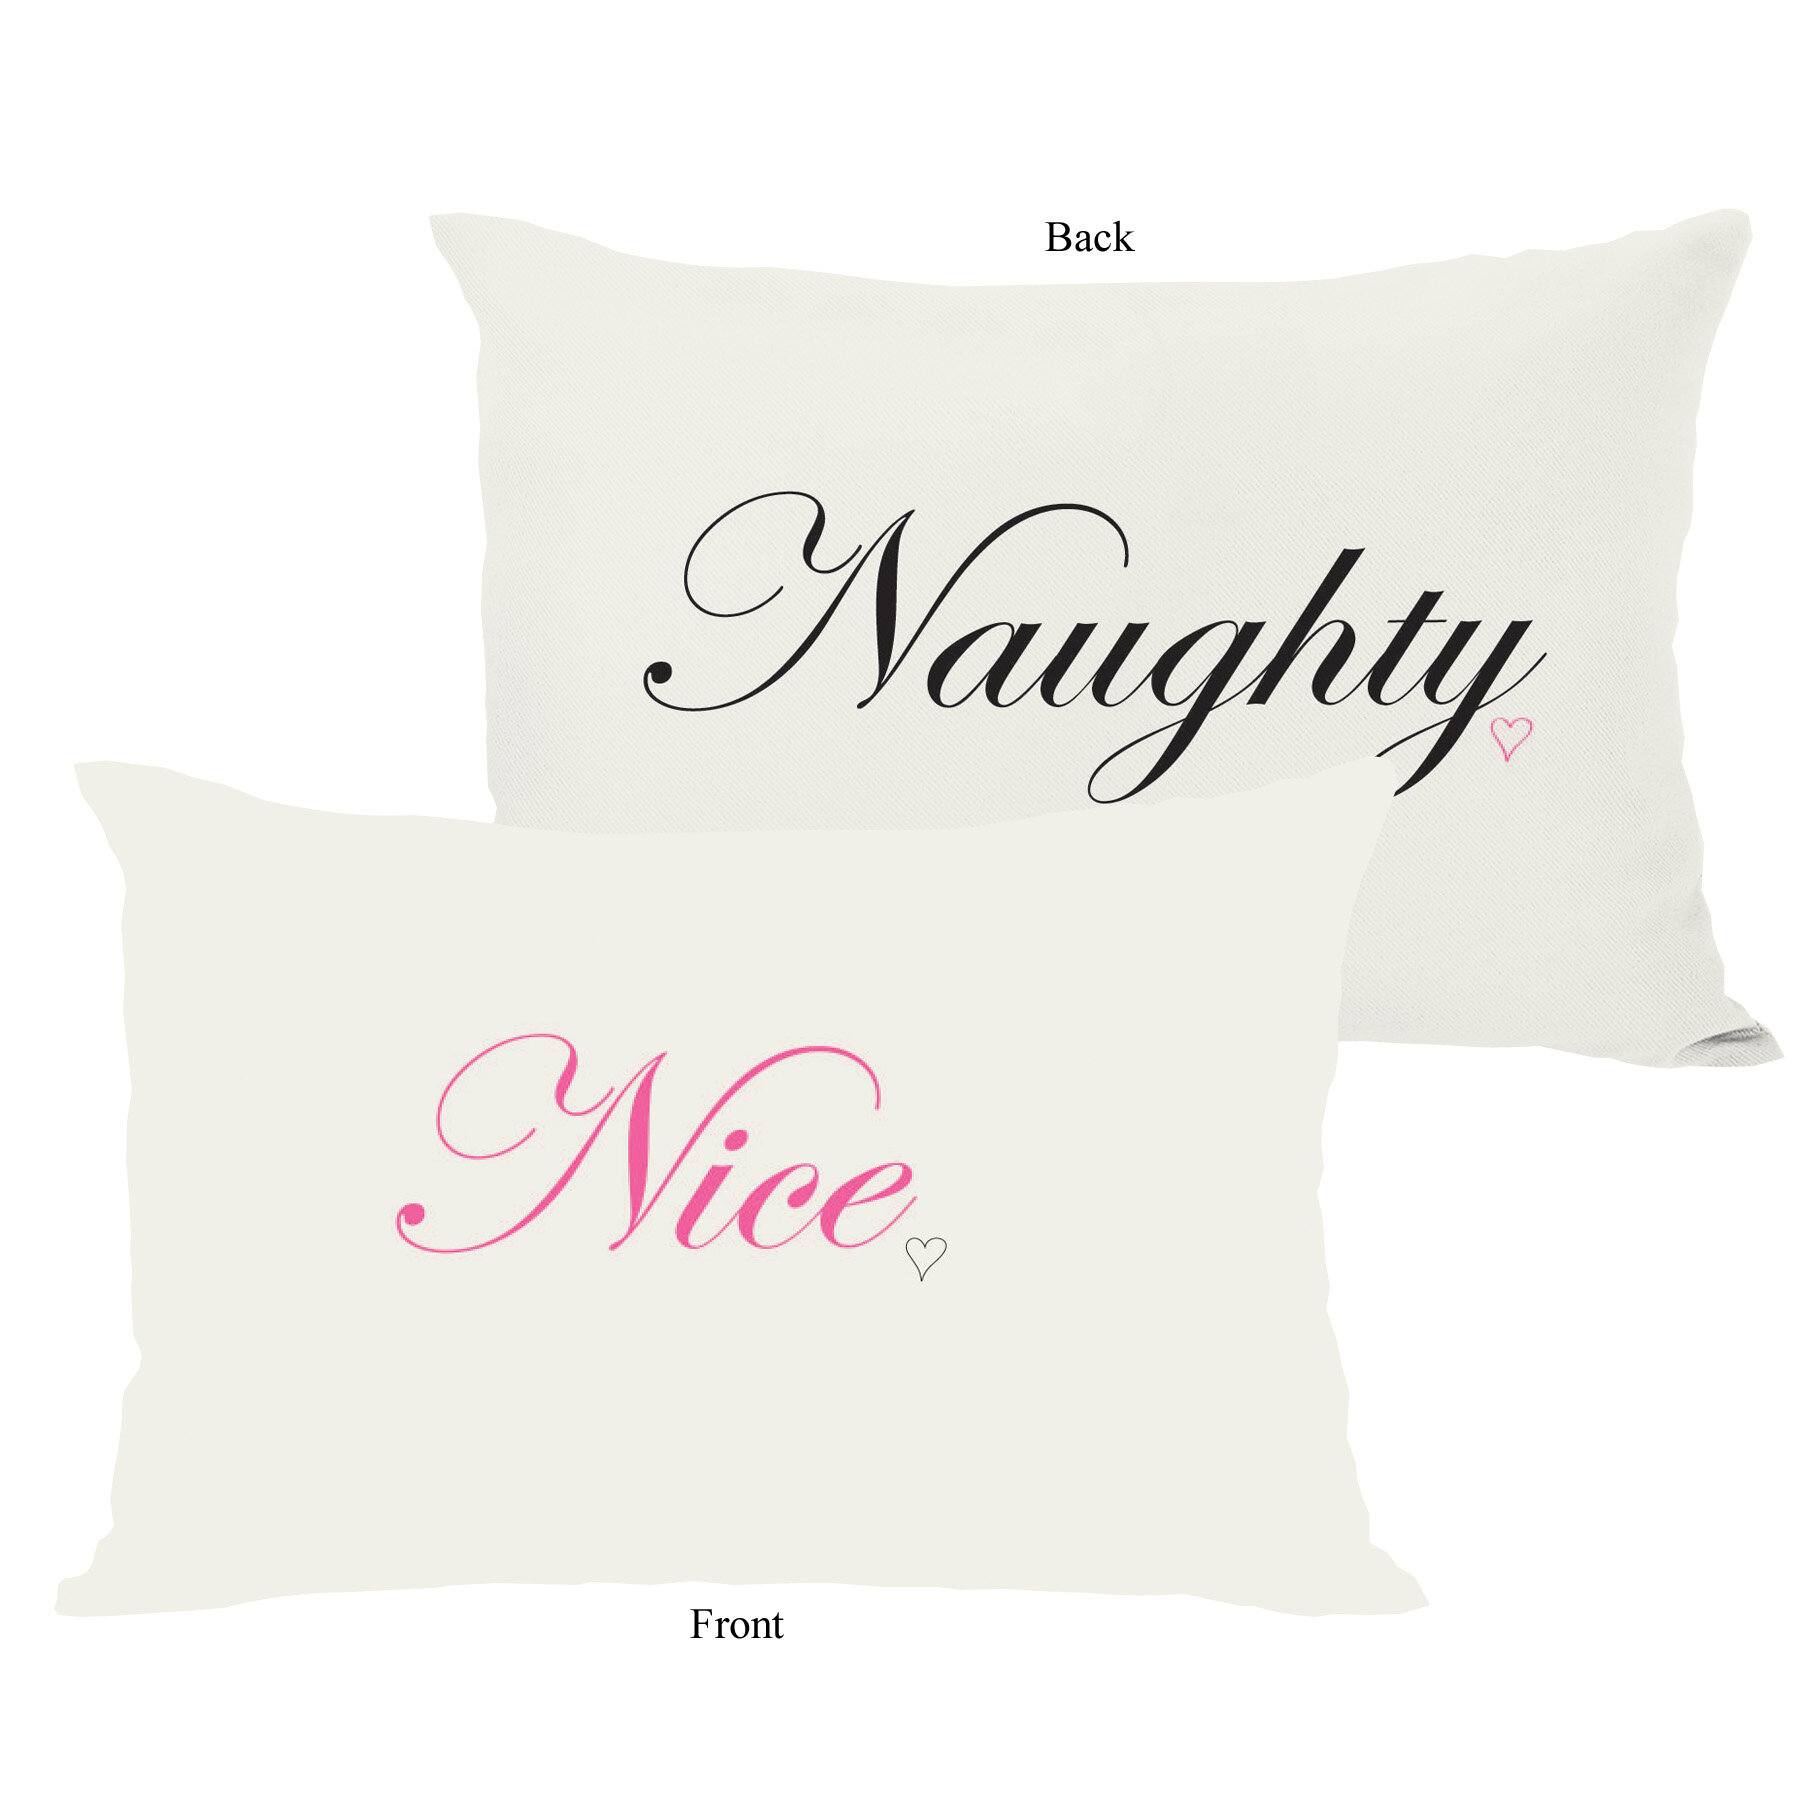 Naughty and nice pillows